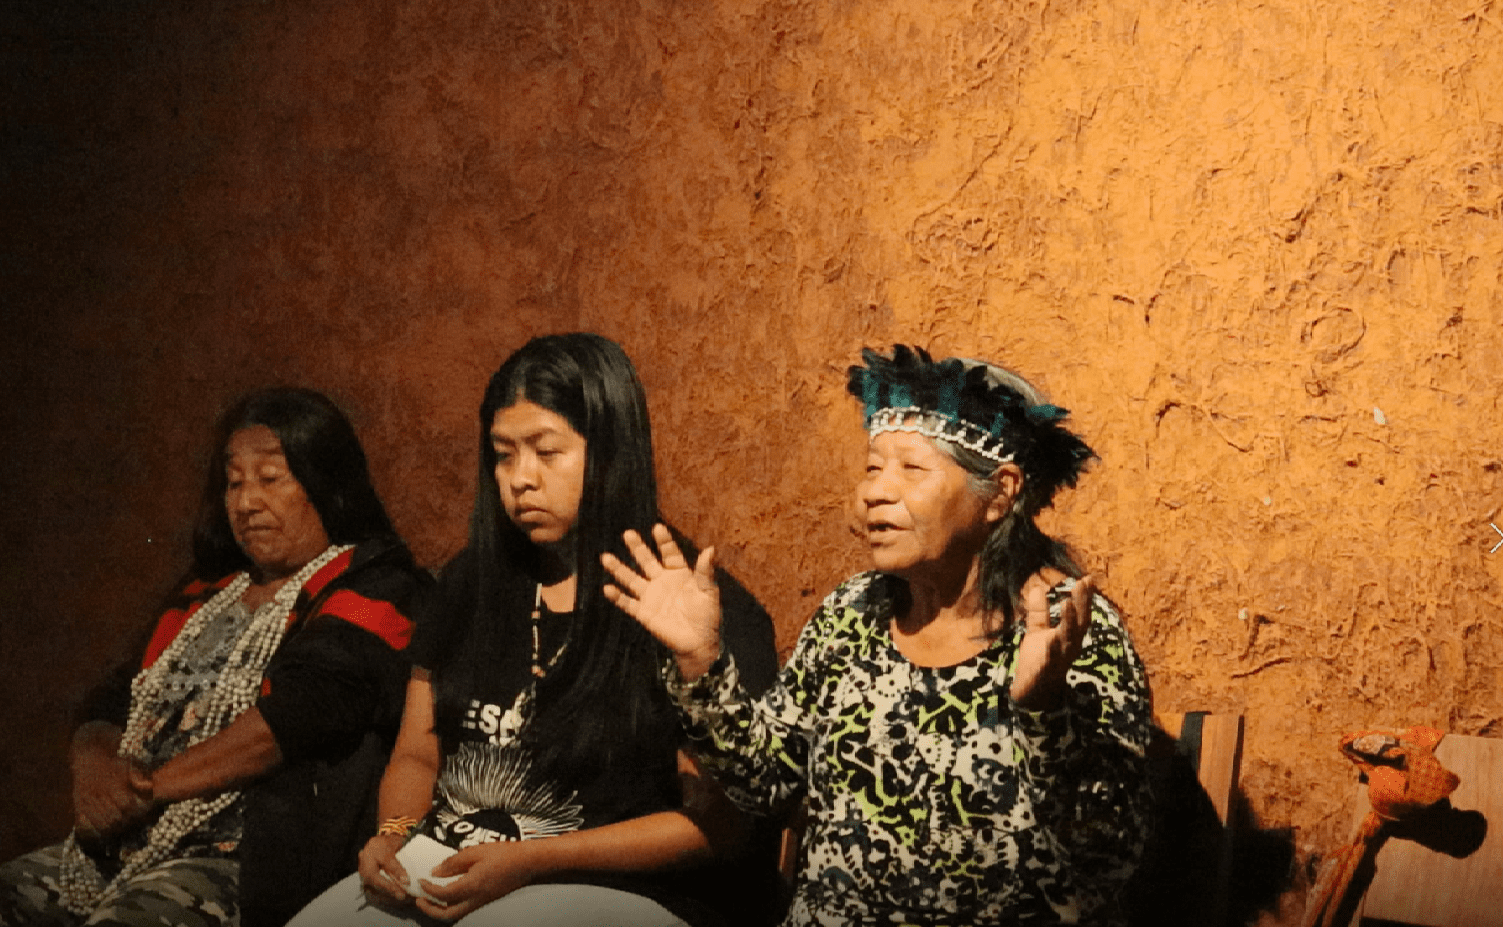 Museus para visitar no Dia dos Povos Indígenas| Indígenas fazem roda de conversa com visitantes do museu | Conexão123